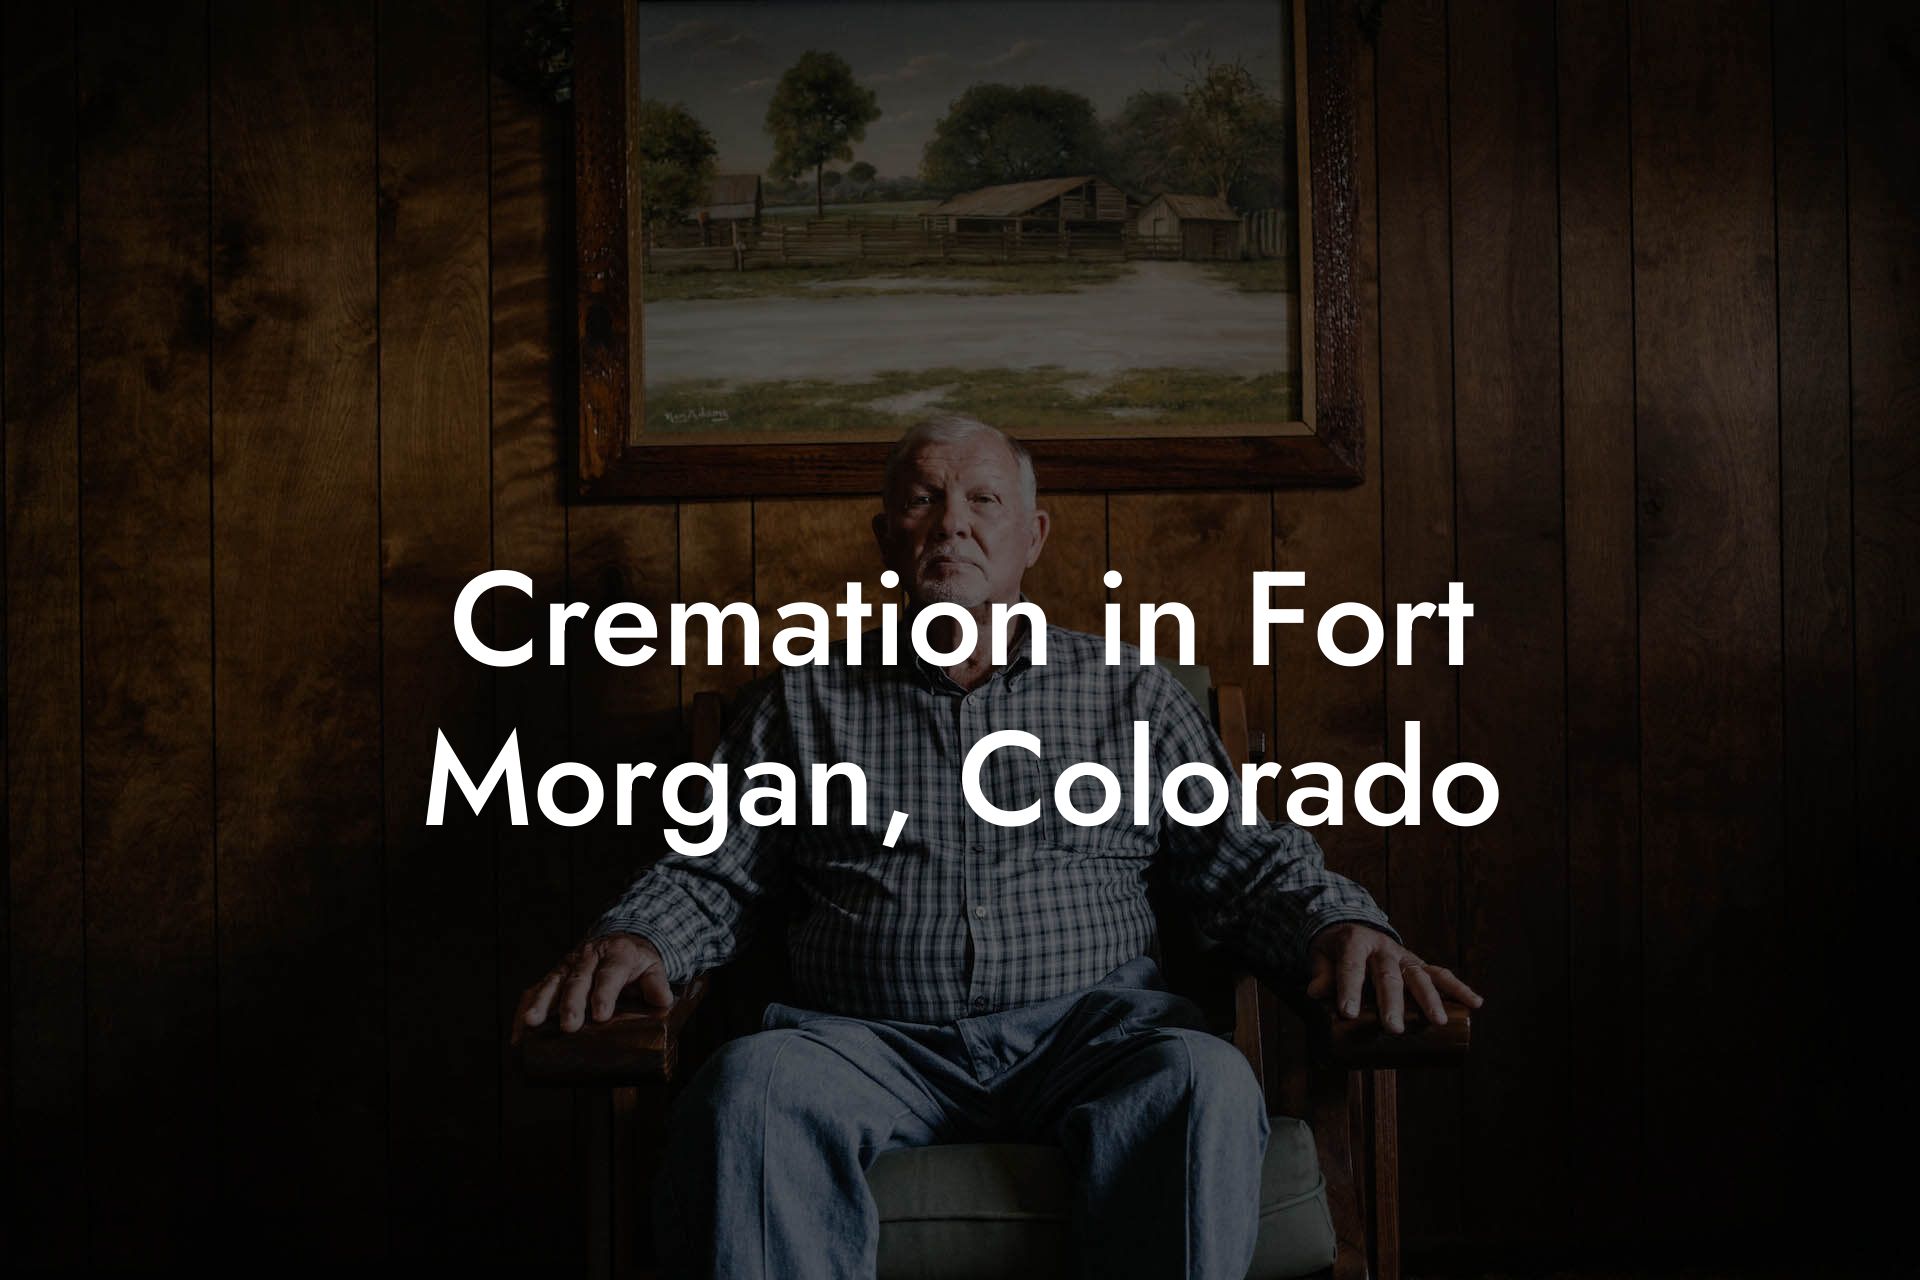 Cremation in Fort Morgan, Colorado